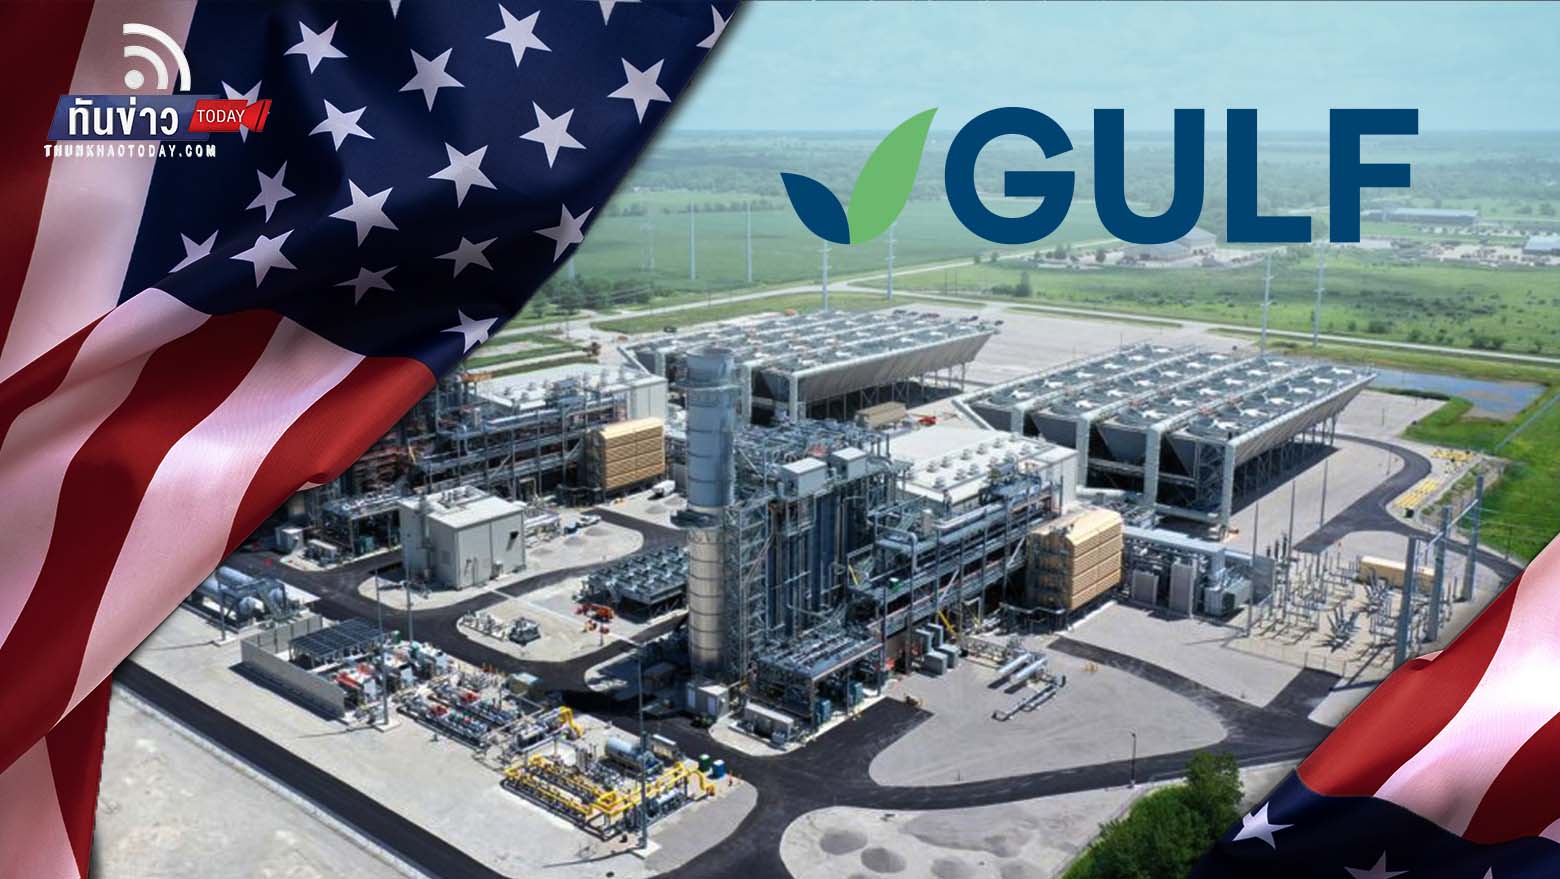 GULF รุกตลาดสหรัฐฯ ซื้อหุ้น 49% โครงการโรงไฟฟ้าก๊าซธรรมชาติ Jackson ในรัฐอิลลินอยส์ เสริมความแข็งแกร่งธุรกิจพลังงาน